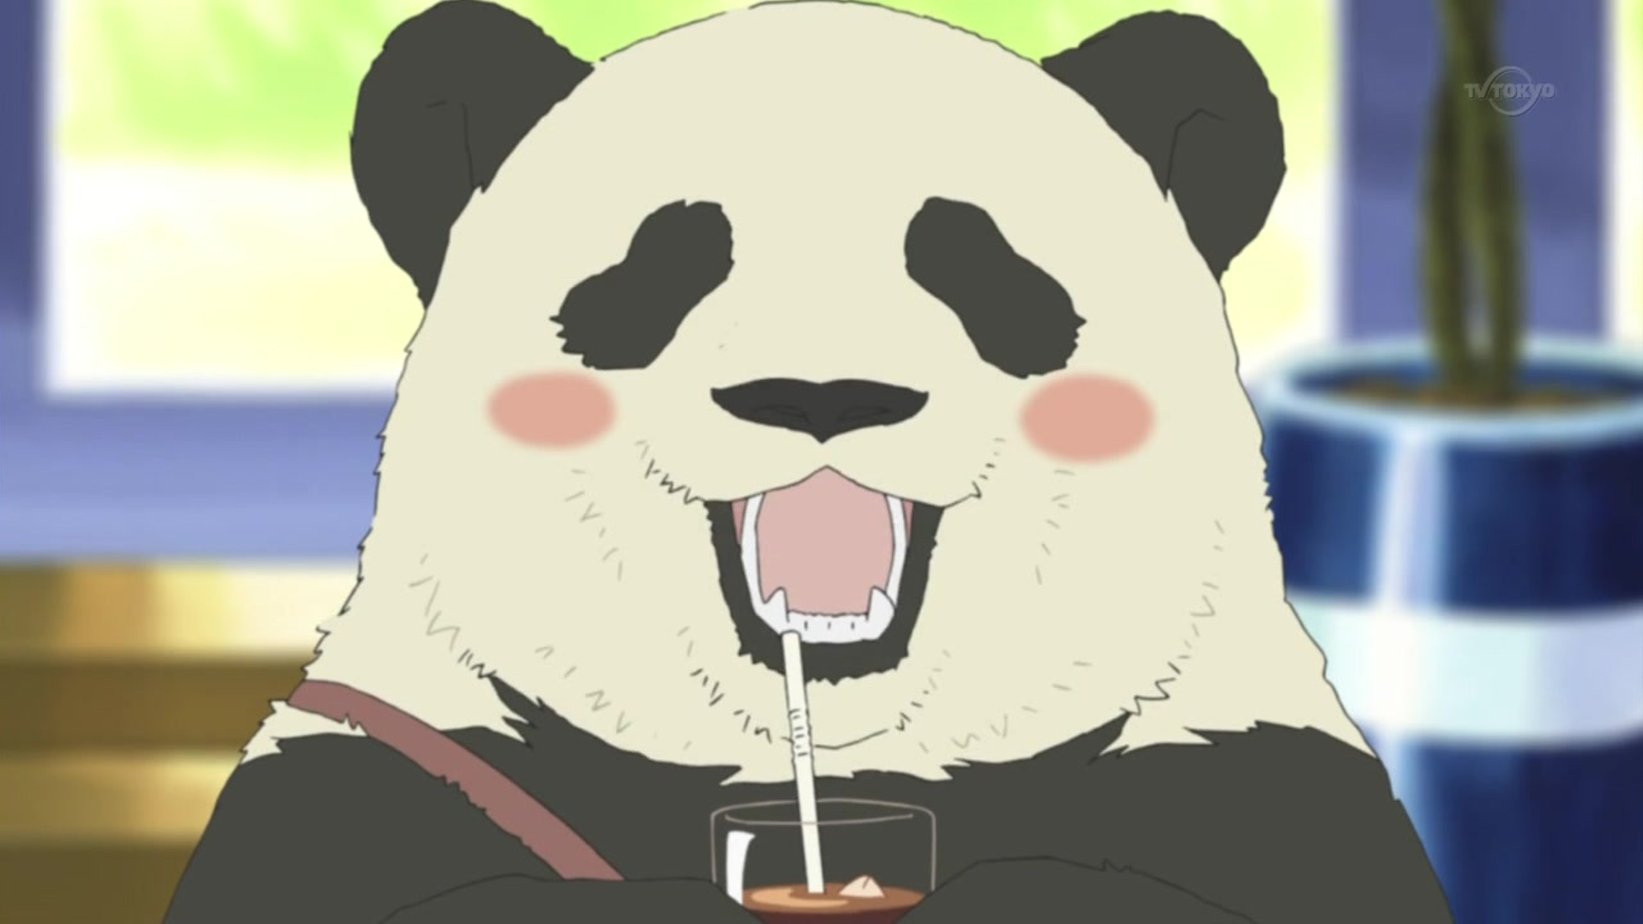 Аниме кафе у белого медведя Панда